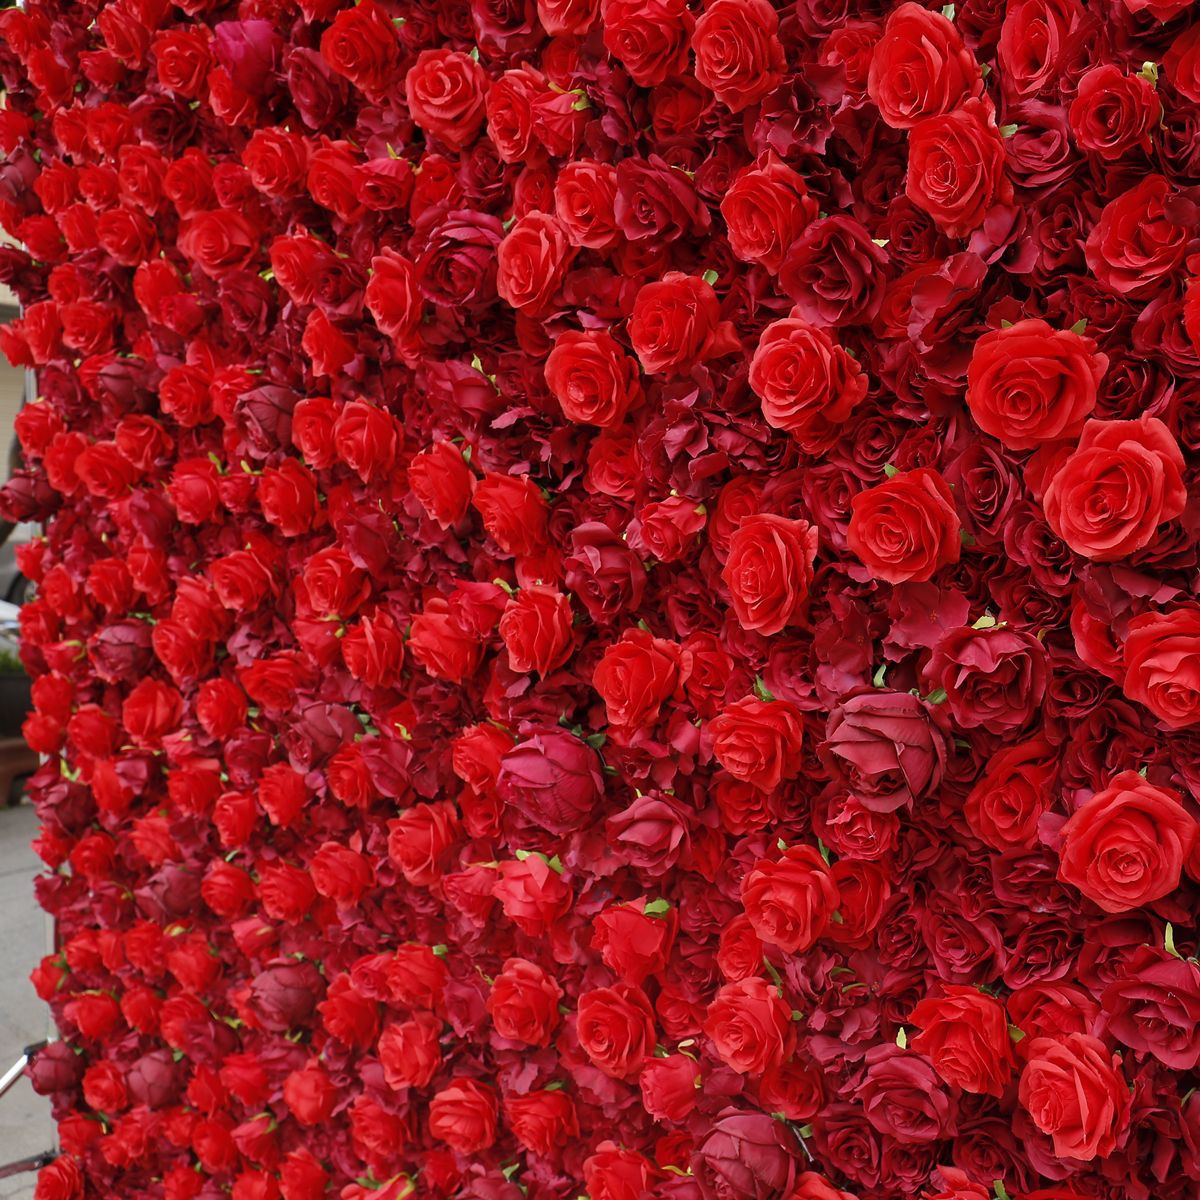 Червона тканина нижня квітка стіни тло стіни виробник оптом весільні прикраси тканини моделювання квіти